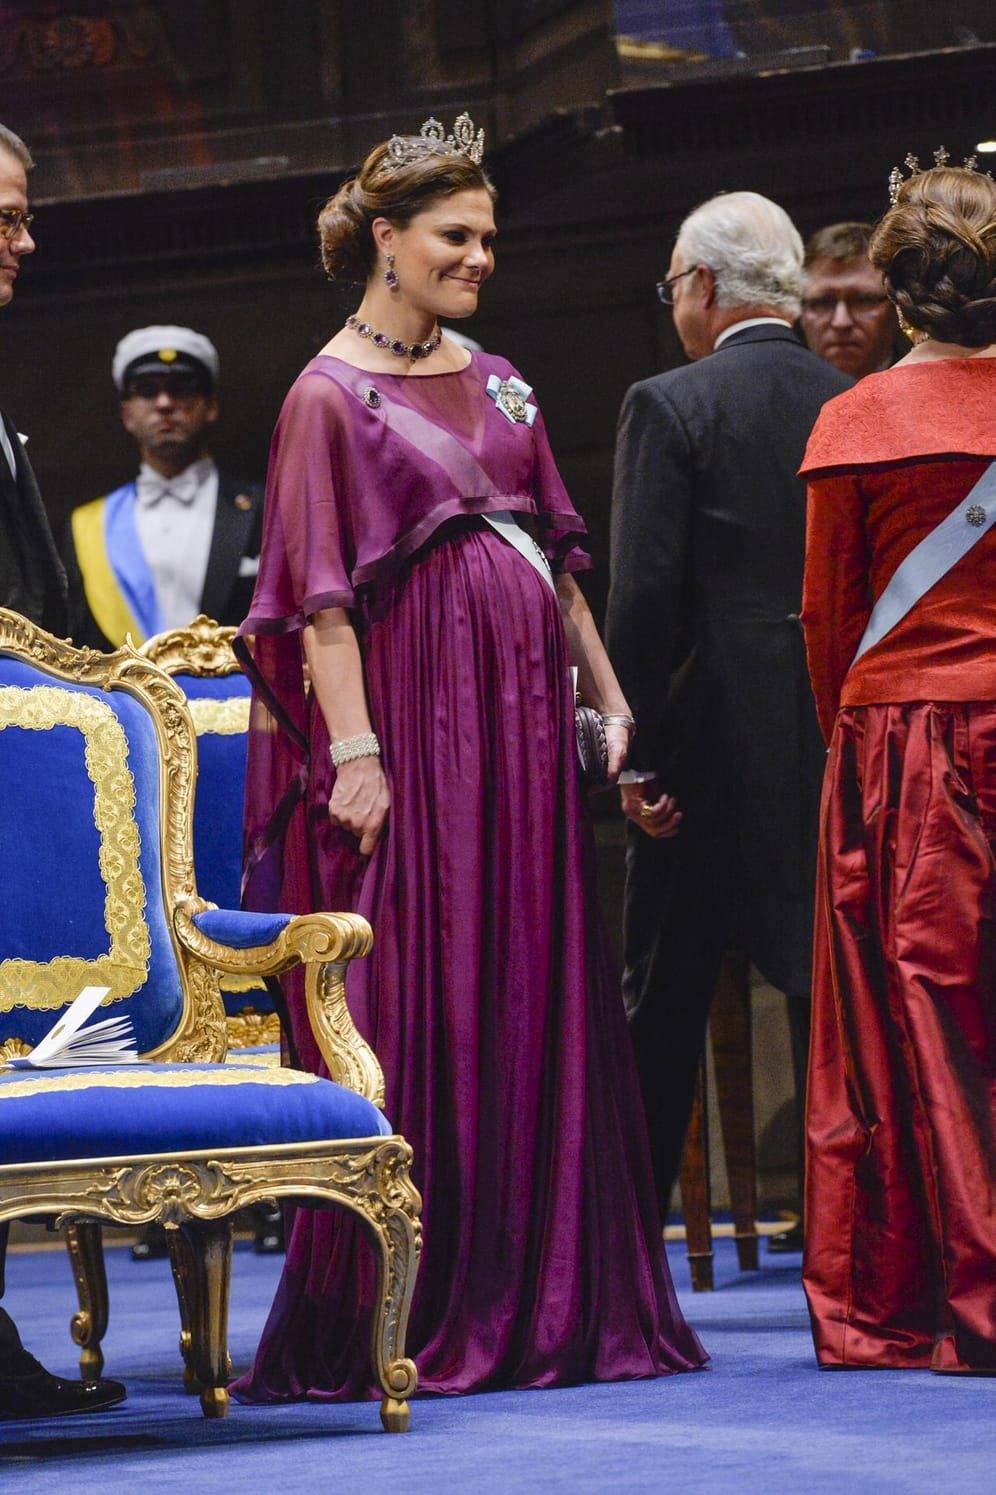 Die schwedische Prinzessin Victoria bei der Nobelpreisverleihung in Stockholm: Ihr Geburtstermin ist erst im März, aber jetzt schon ist ihr Babybauch deutlich zu sehen.